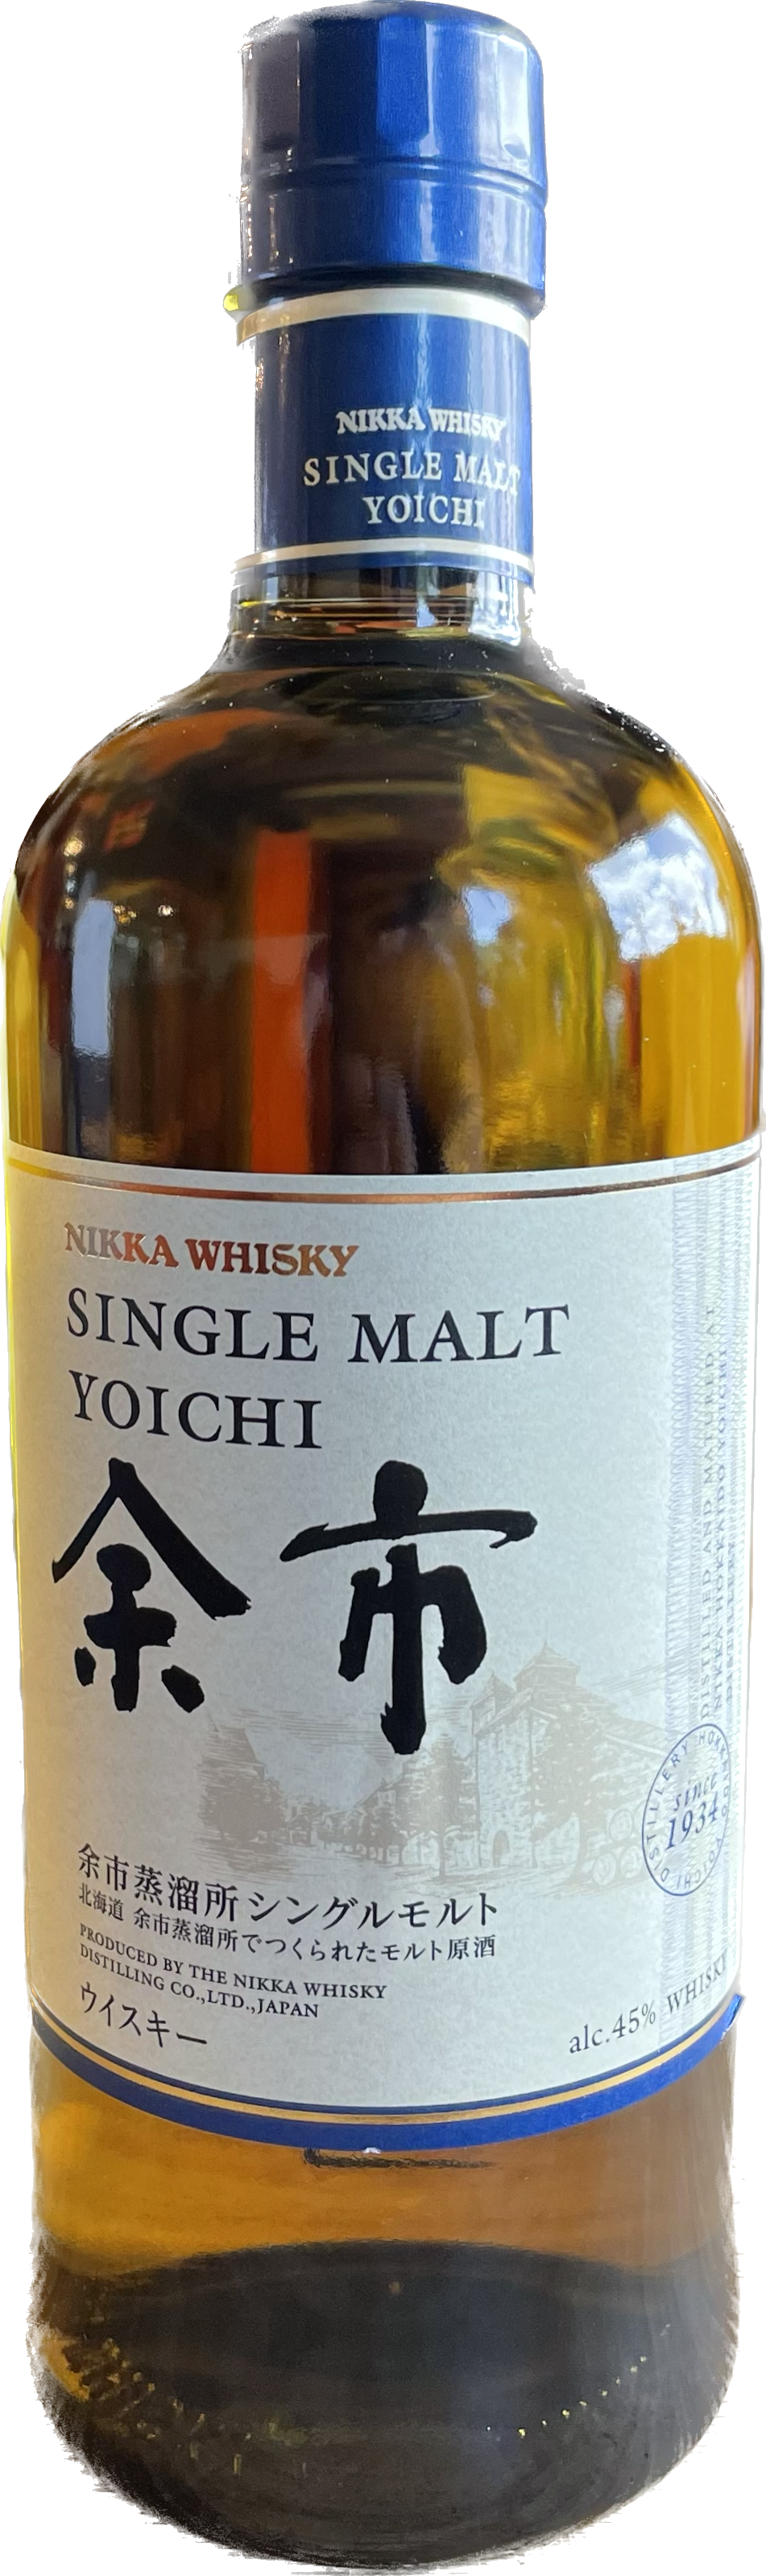 Yoichi Nikka Whisky